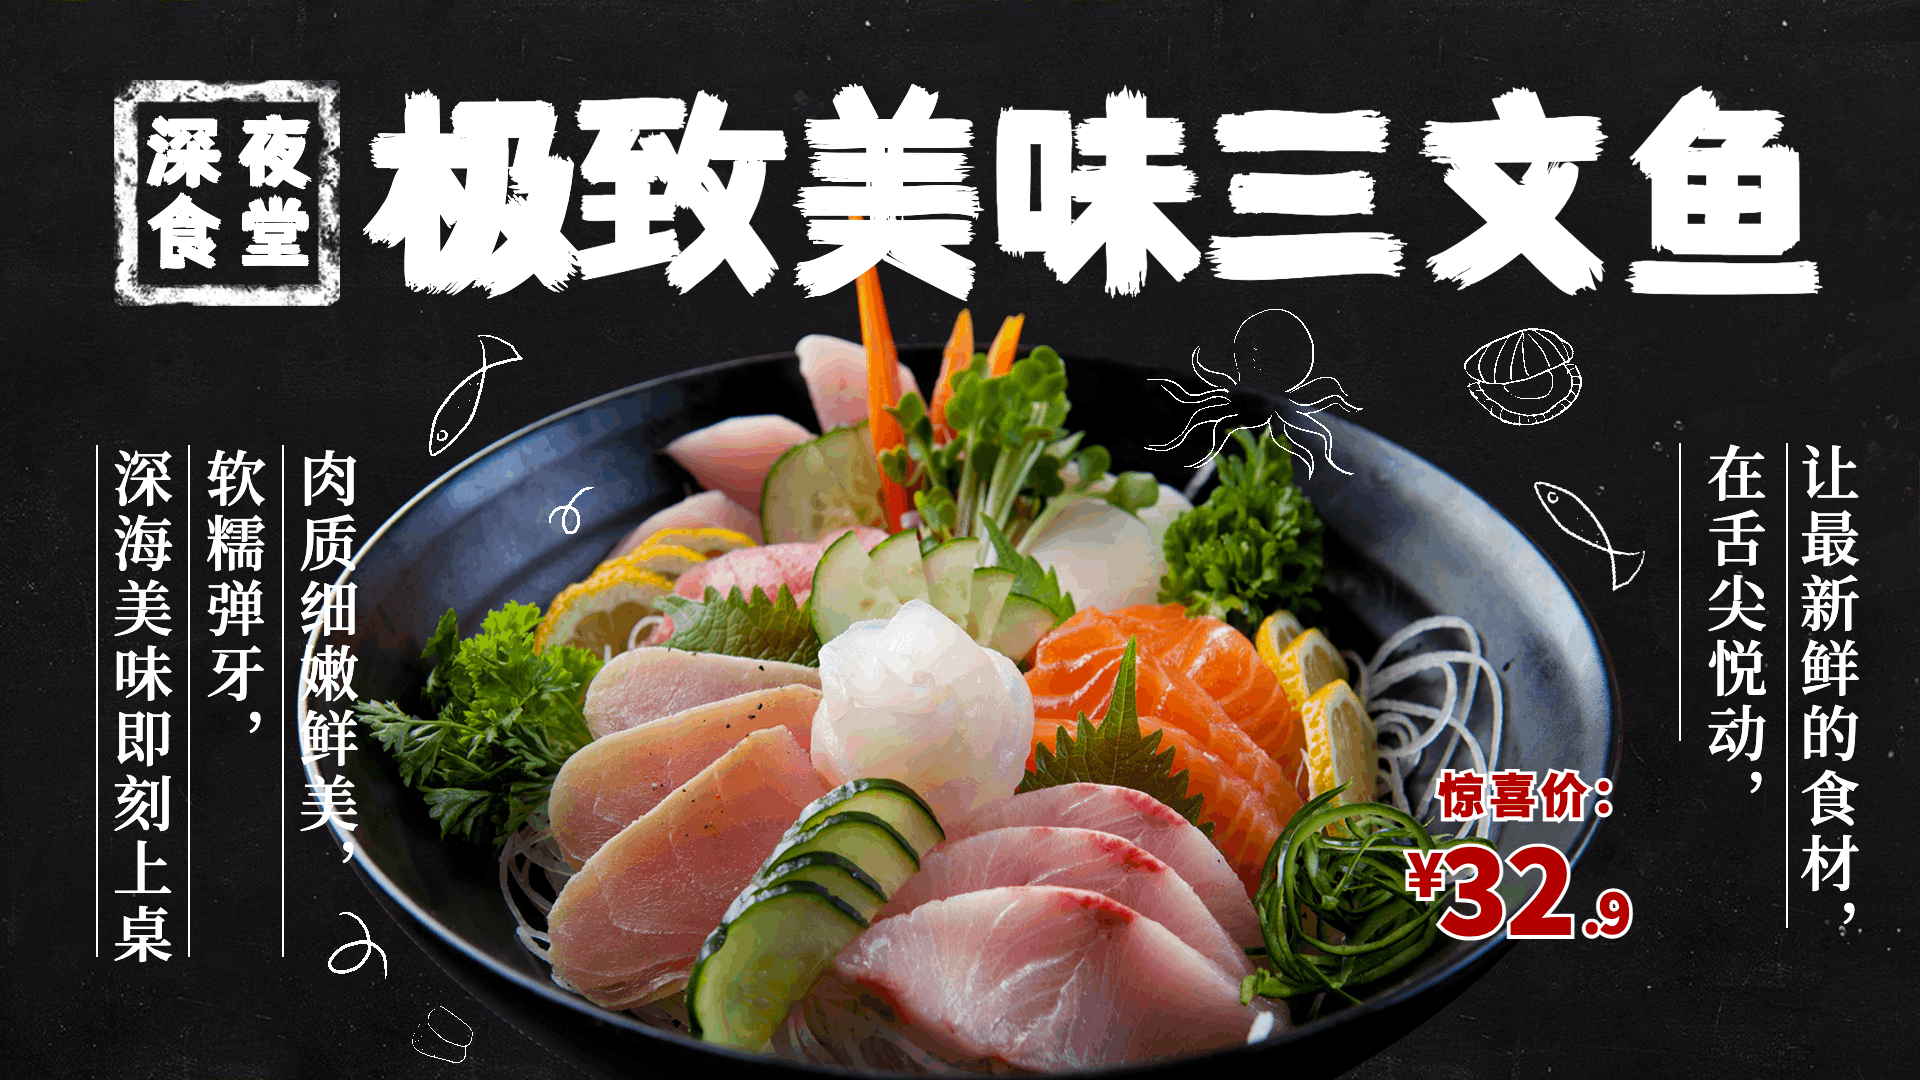 日本料理三文鱼推荐电视屏横屏动图